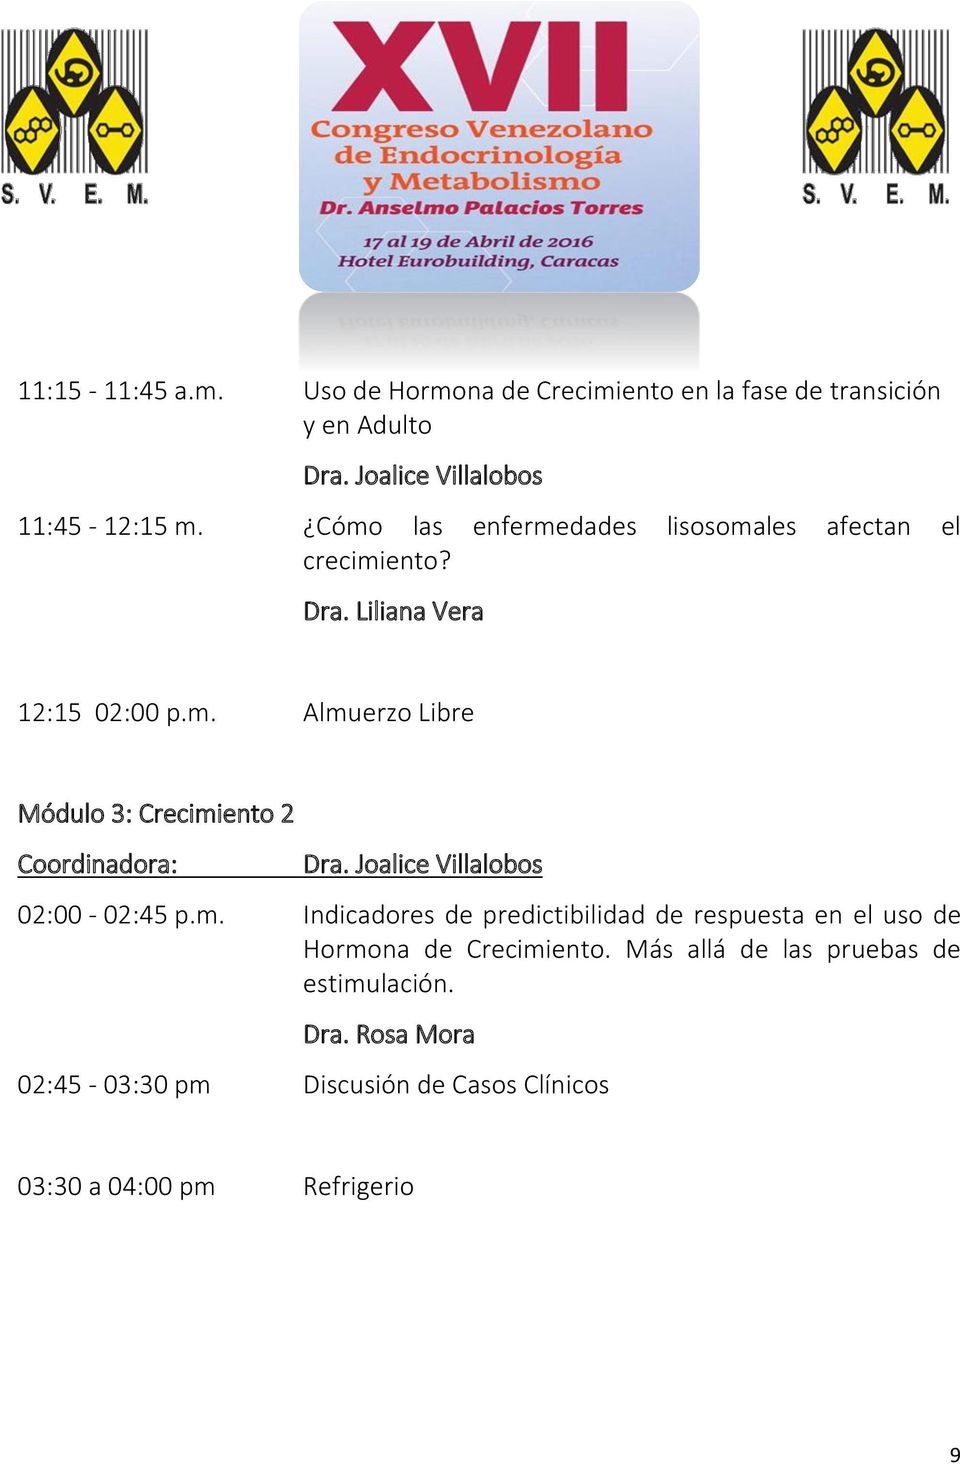 Joalice Villalobos 02:00-02:45 p.m. Indicadores de predictibilidad de respuesta en el uso de Hormona de Crecimiento.